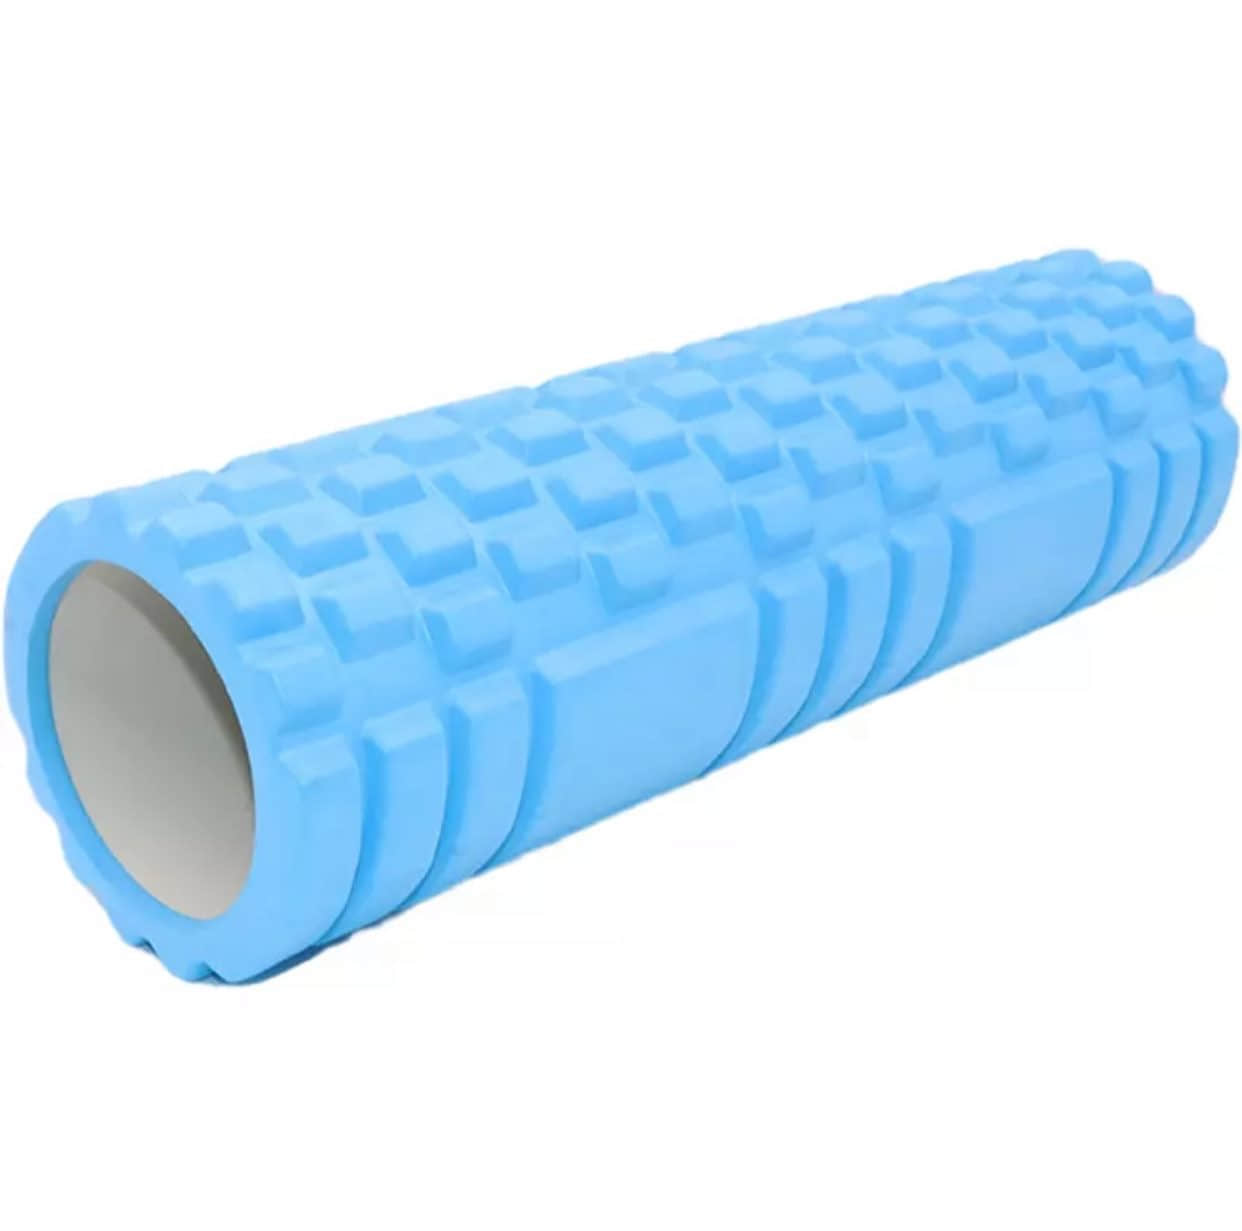 Yoga Roll | Yoga Foam Roller